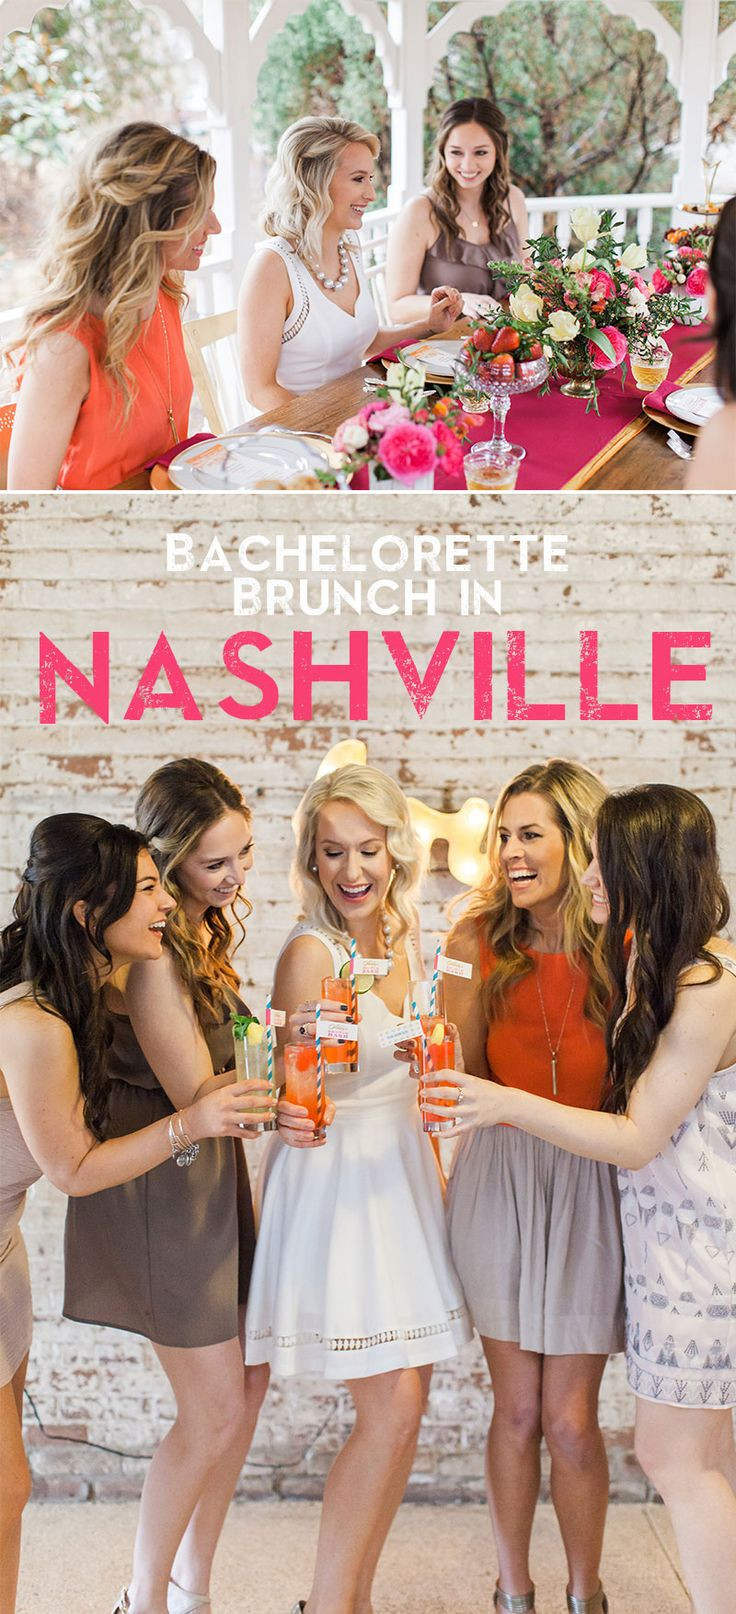 Bachelorette Party Ideas Michigan
 25 best ideas about Nashville bachelorette parties on